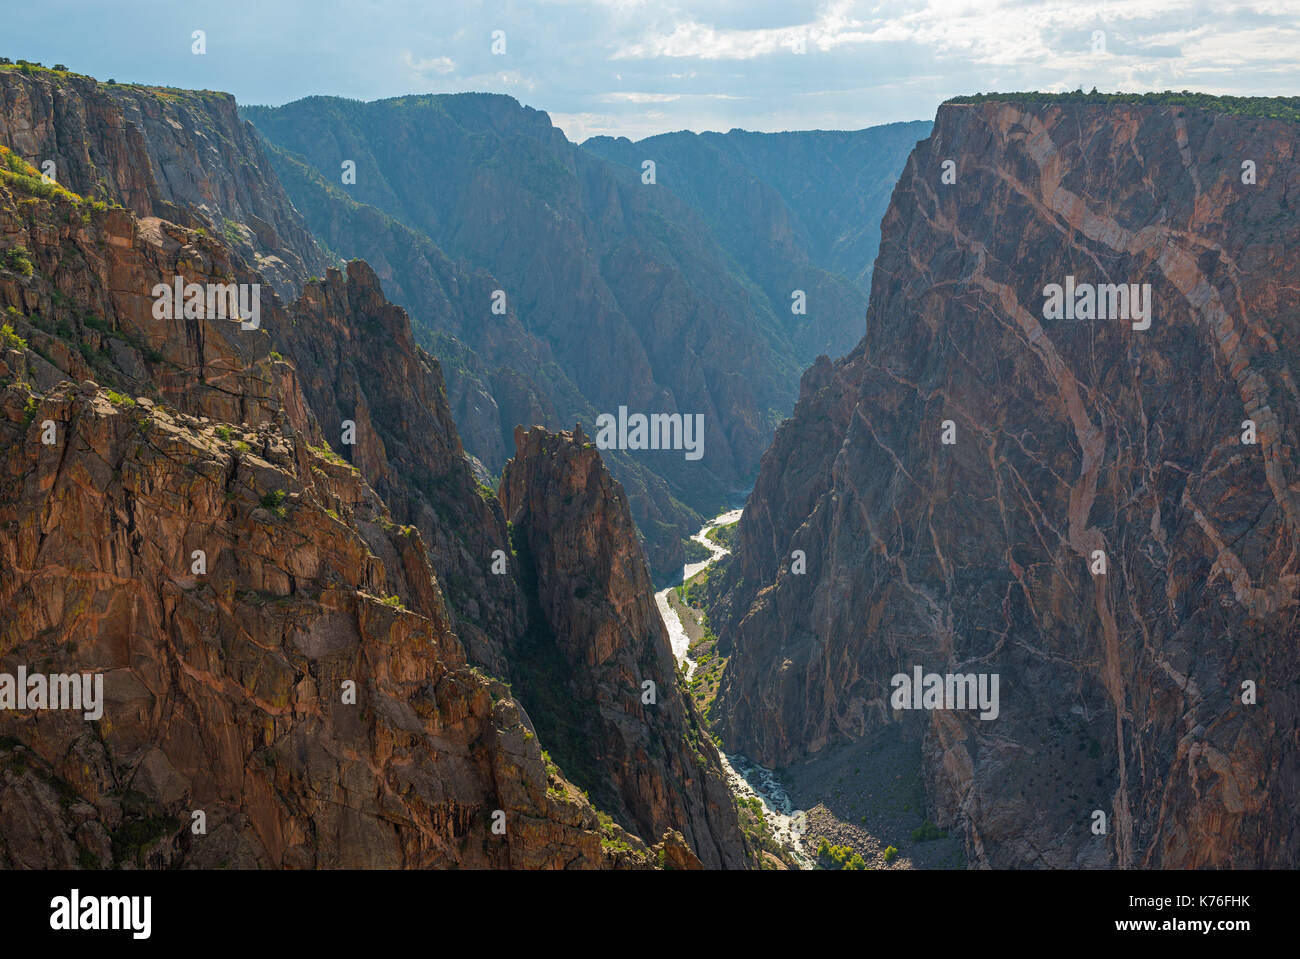 Los acantilados de granito del Cañón Negro del Gunnison con los dos dragones y el misterioso río Gunnison cortar a través de la roca, Colorado, Estados Unidos. Foto de stock